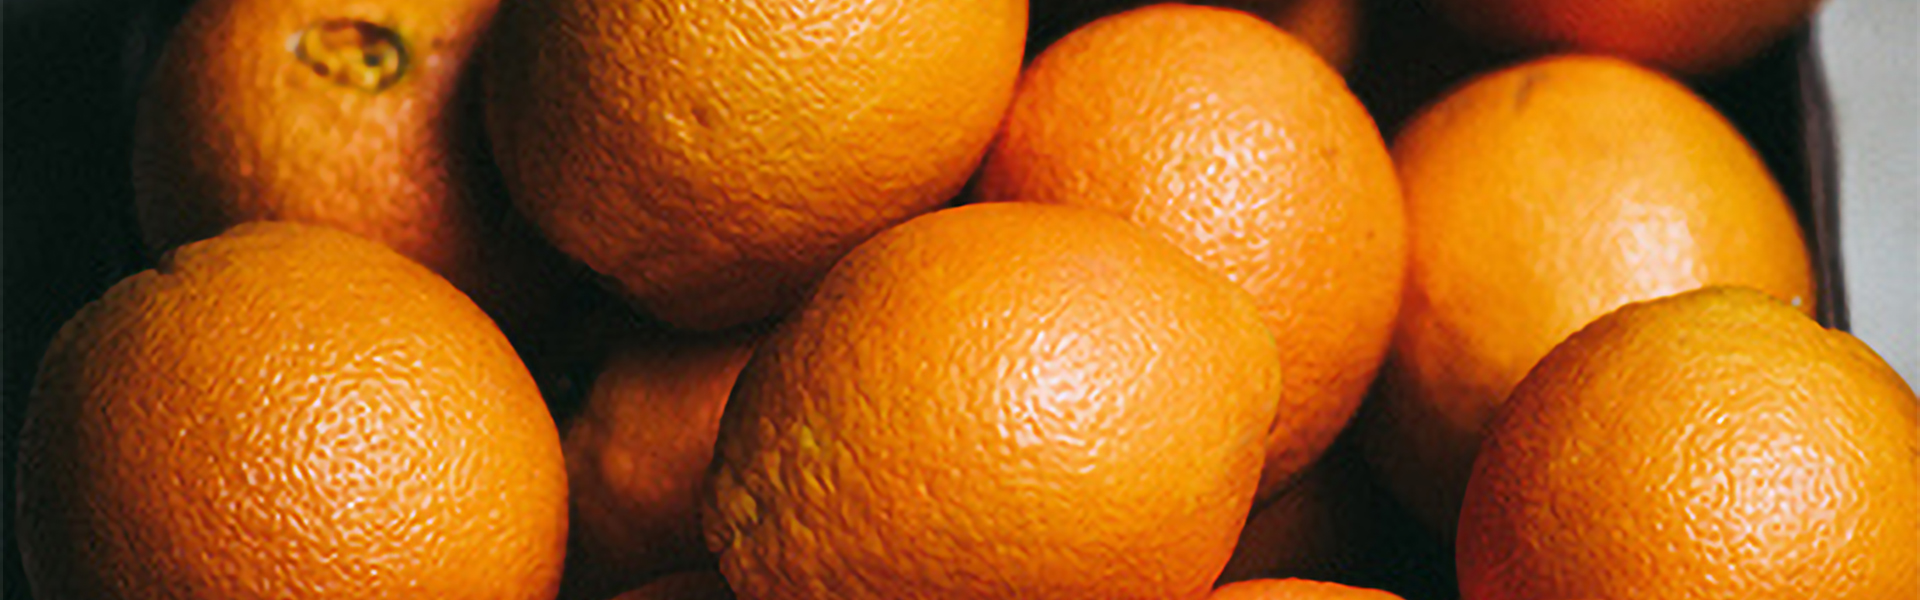 Conoce tu alimentación: Naranjas